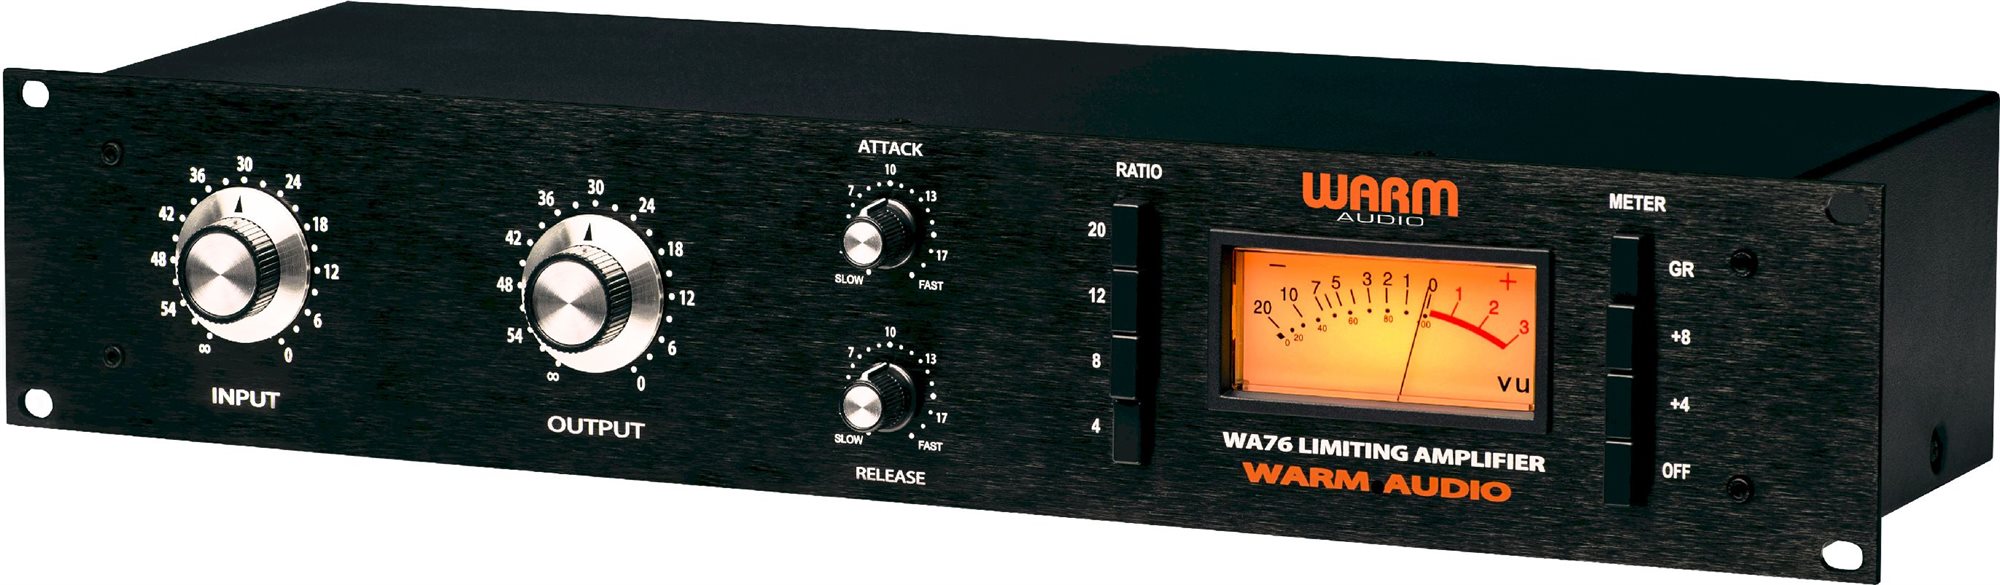 warm audio wa76